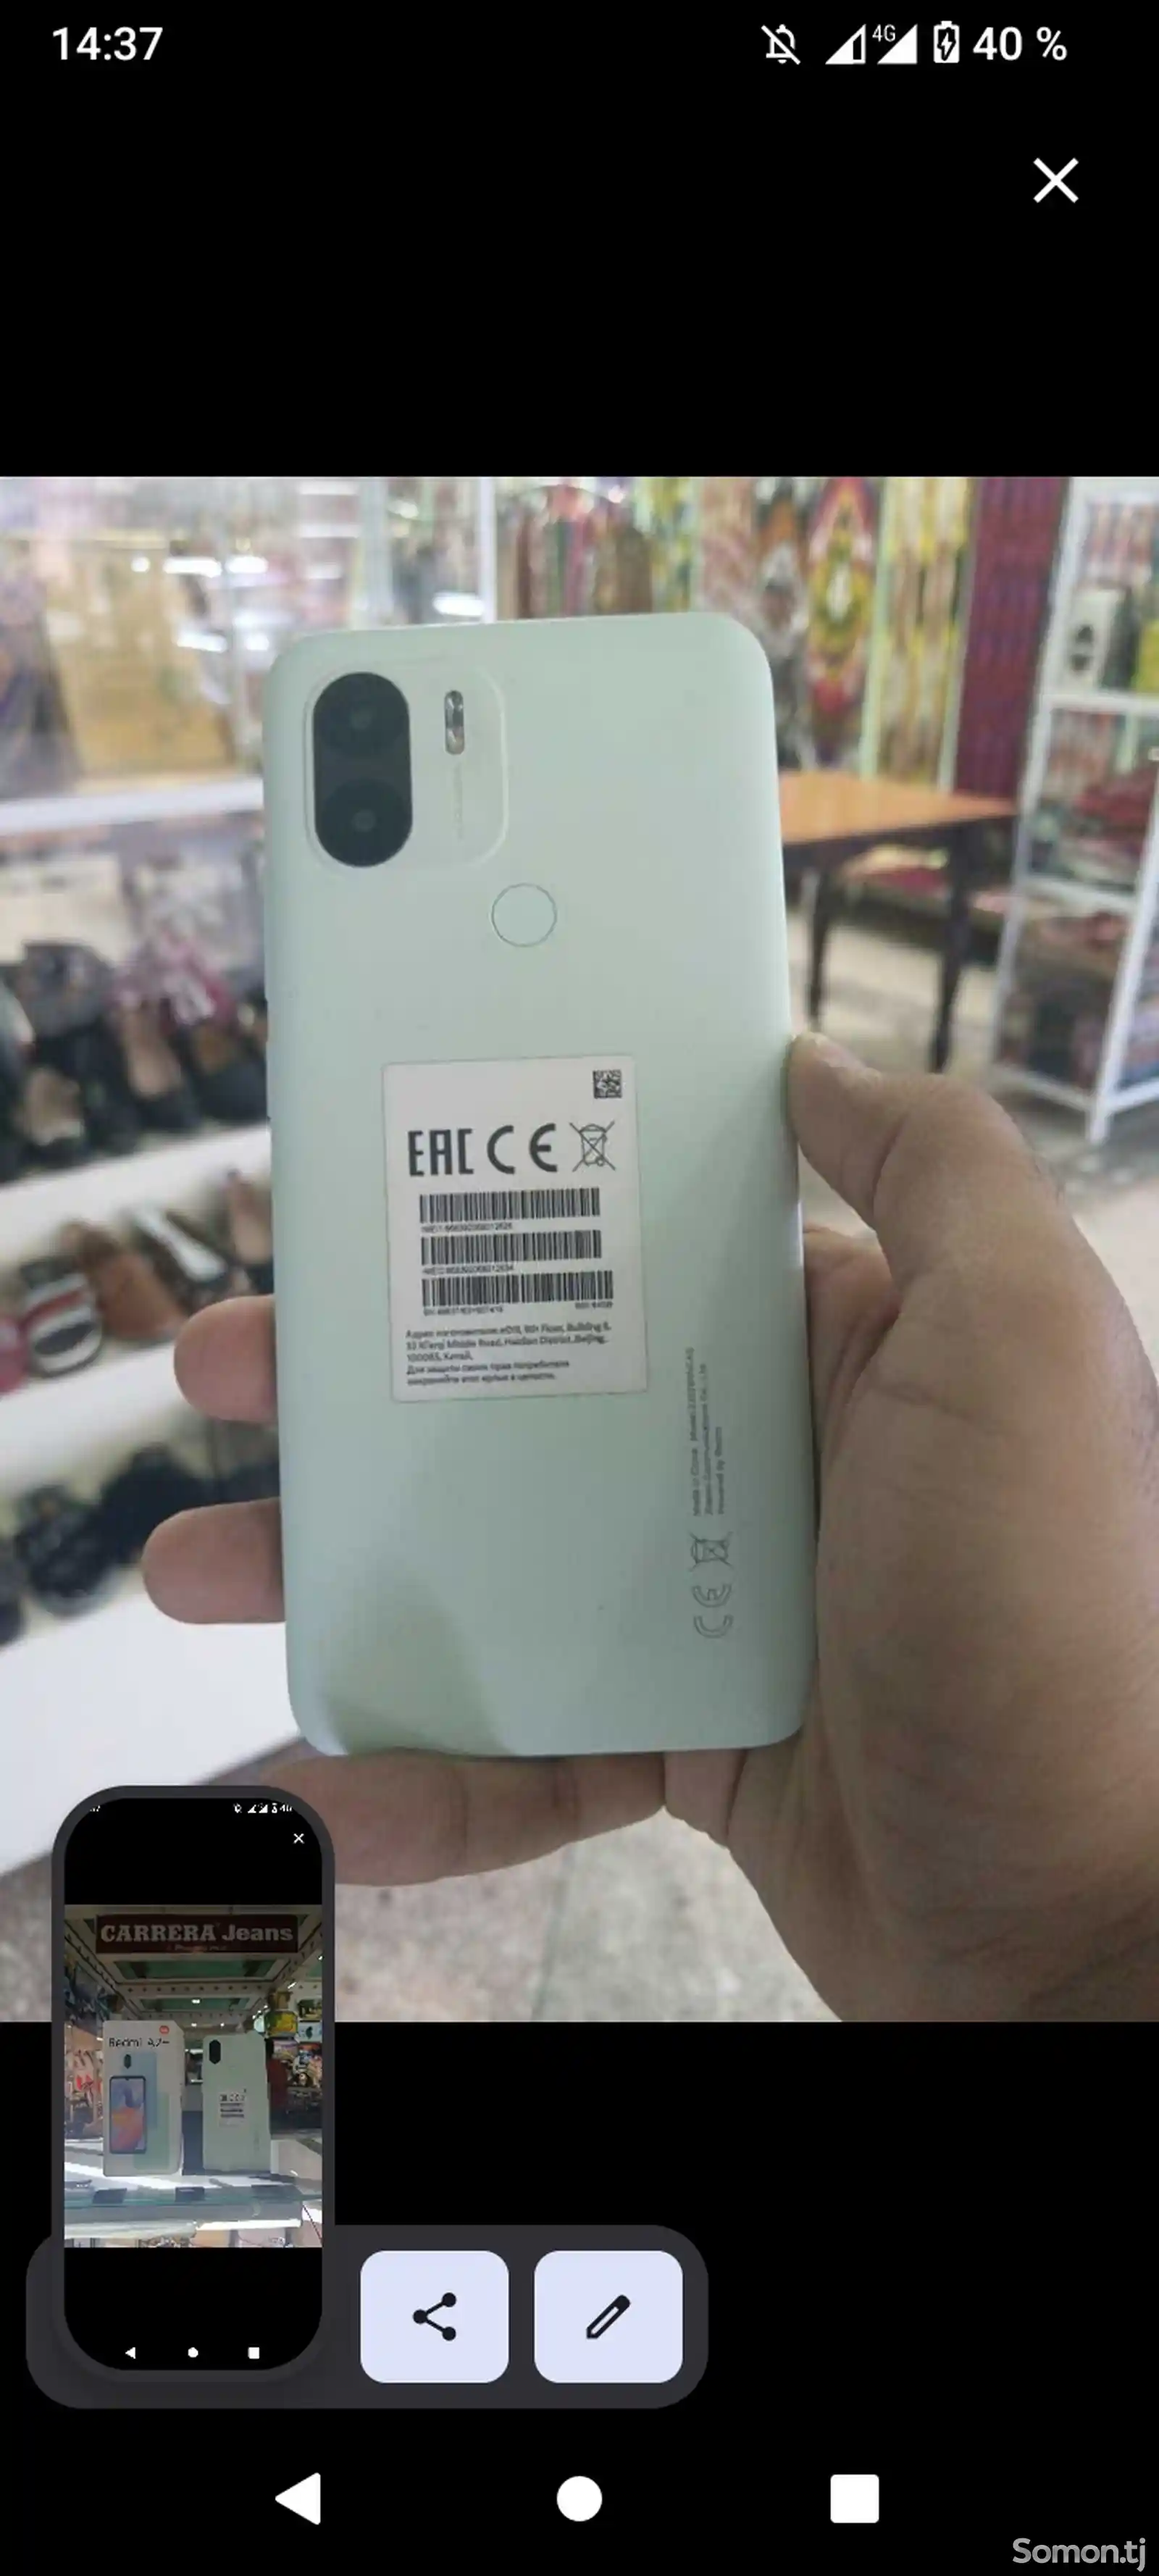 Xiaomi Redmi A2+ 64gb-1